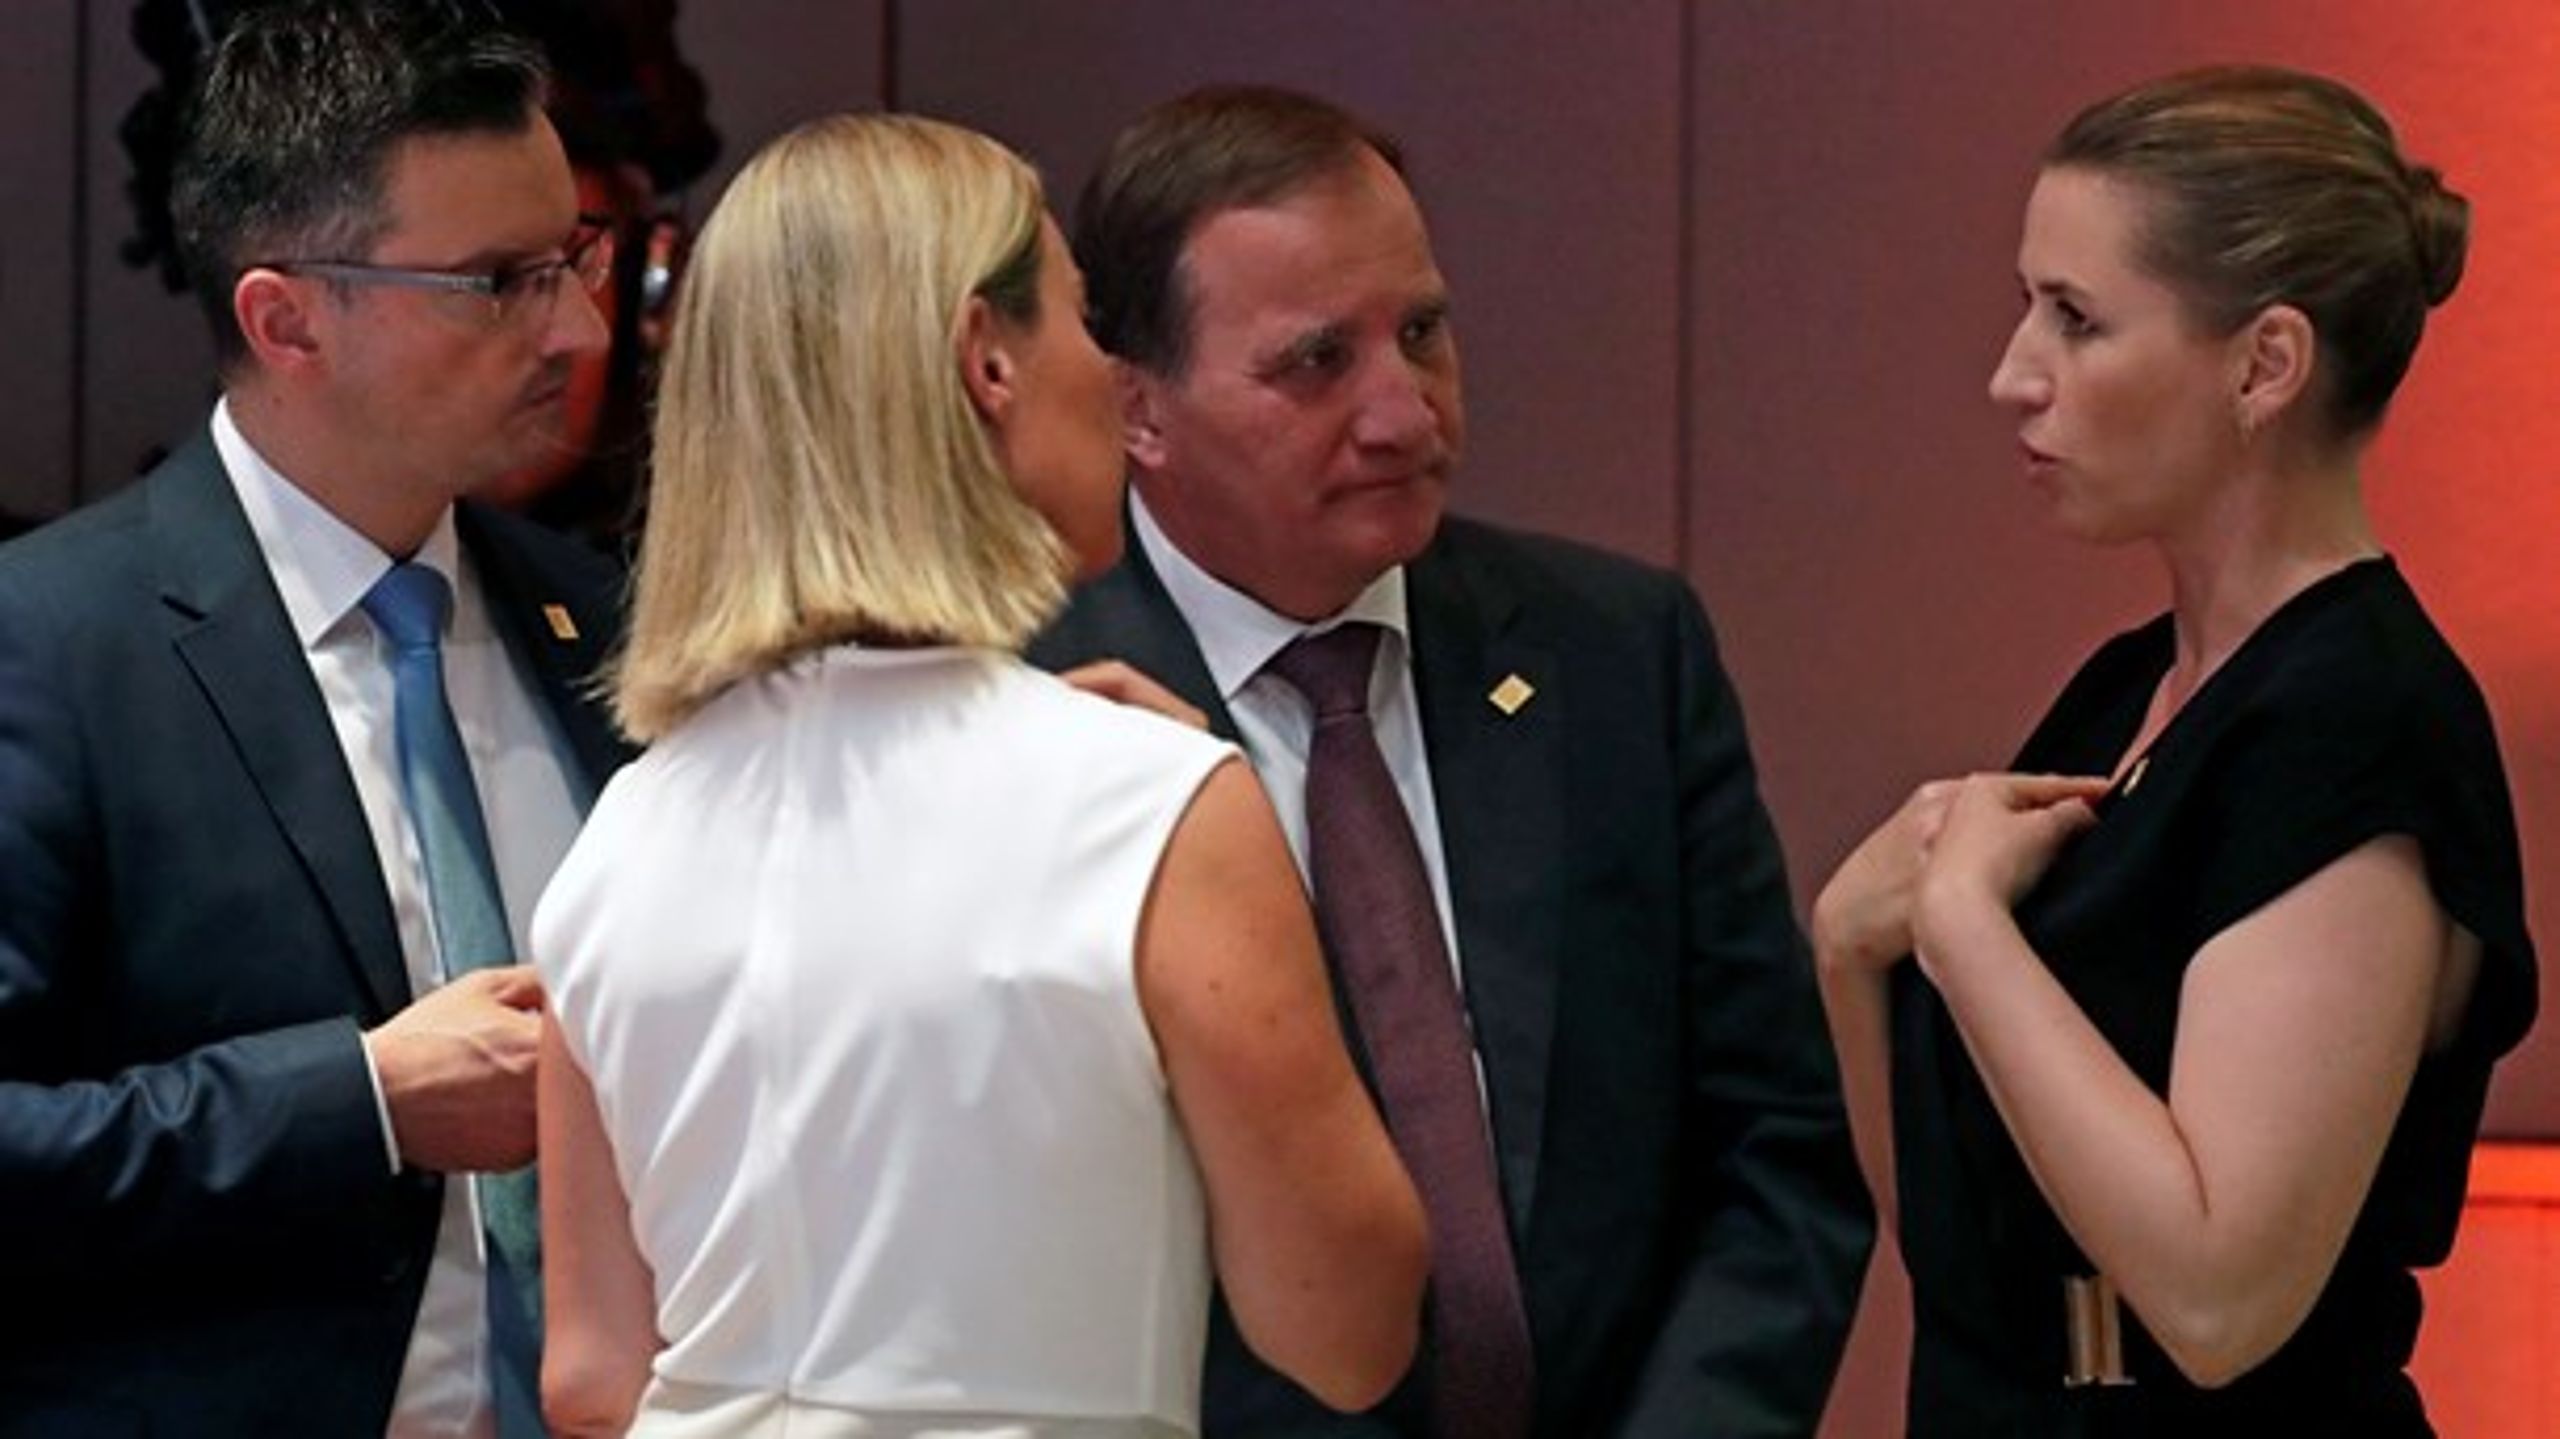 Mette Frederiksens (S) første topmøde som statsminister endte uden resultat. Allerede tirsdag skal Frederiksen dog mødes med sine EU-kollegaer igen til et nyt topmøde.